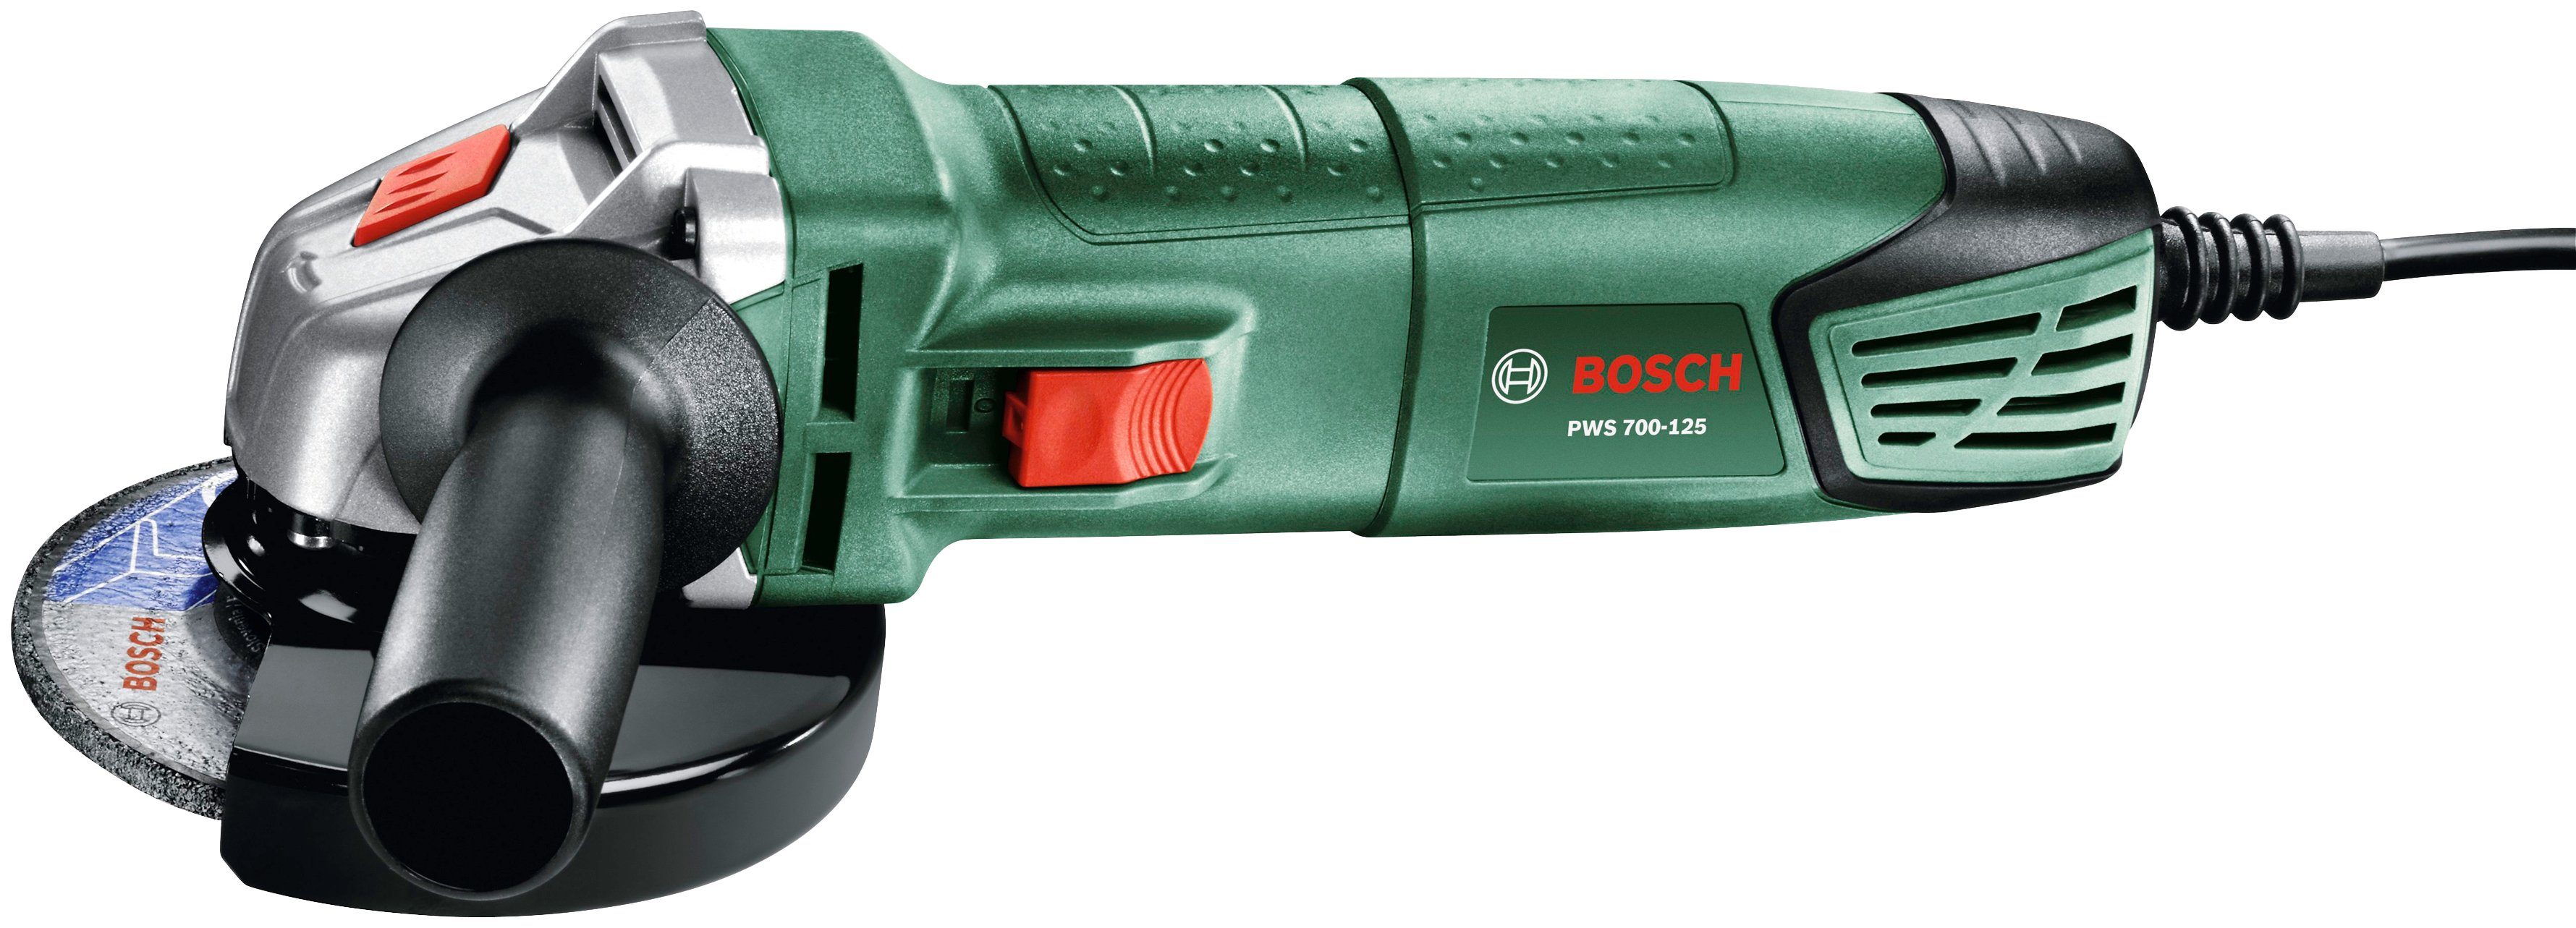 850-125 & Box, Bosch Home Winkelschleifer Garden 12000 max. U/min PWS + System